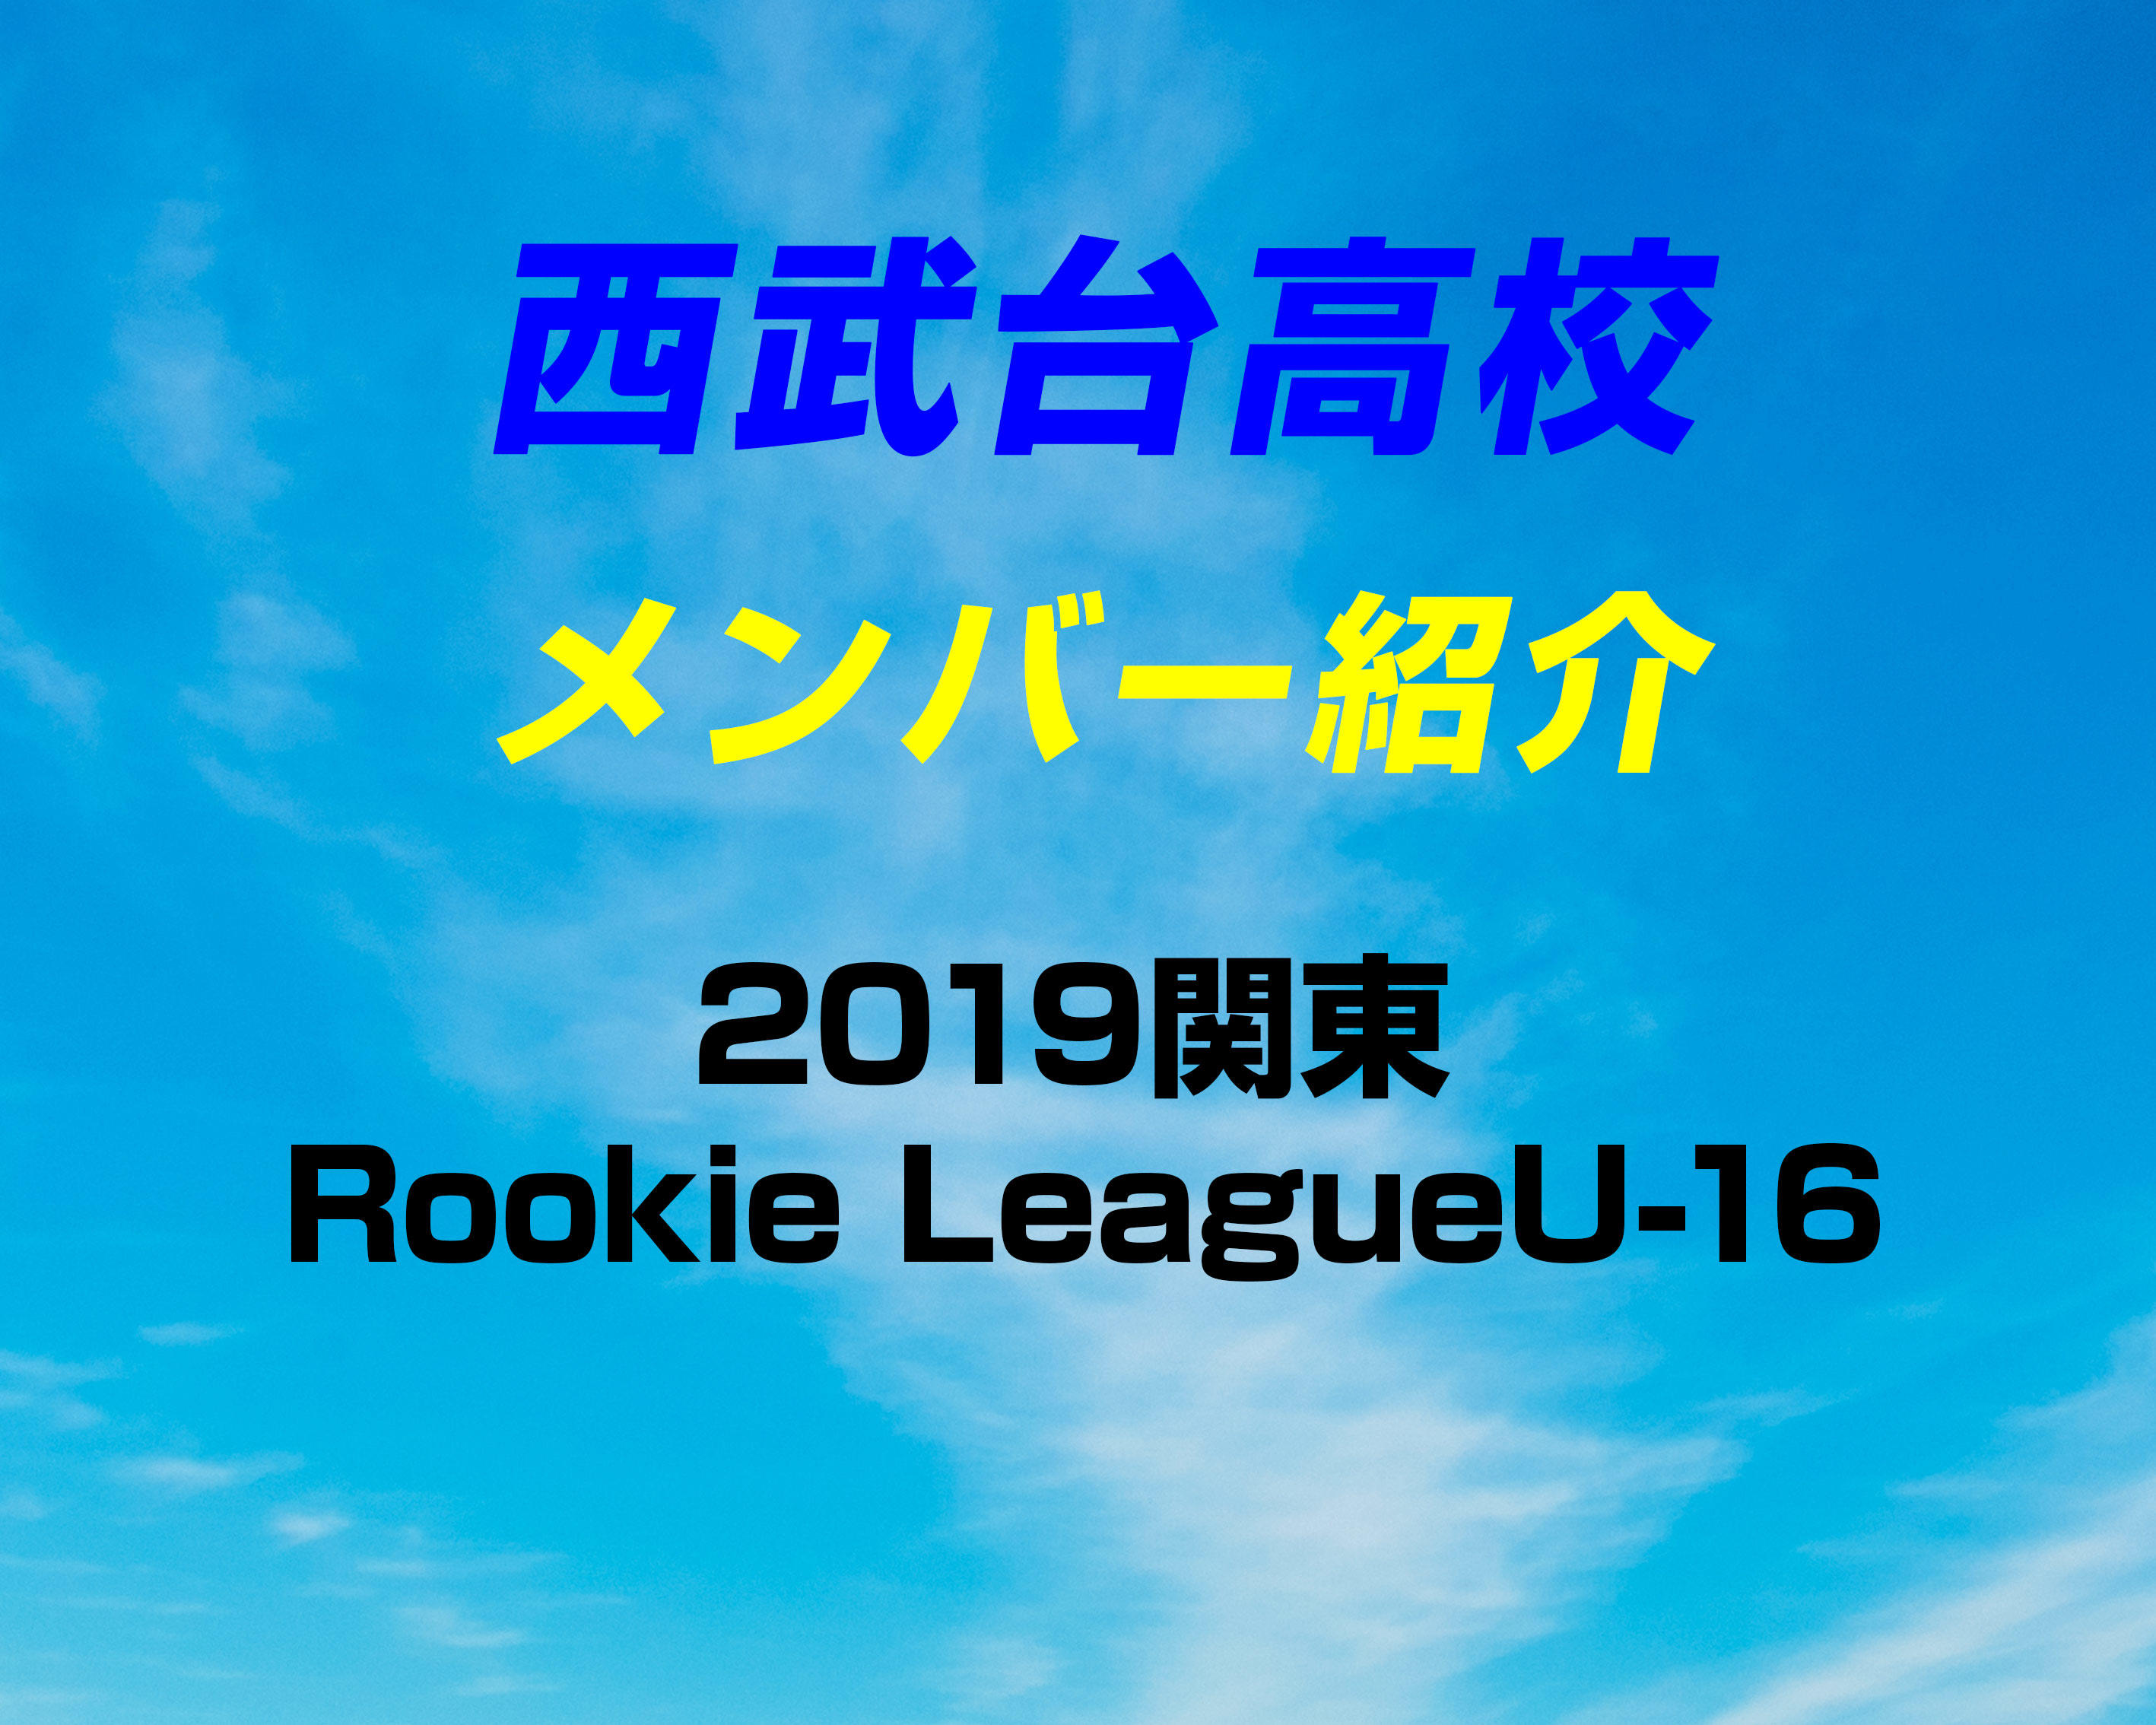 埼玉の強豪 西武台高校サッカー部のメンバー紹介 19関東rookie Leagueu 16 ヤンサカ